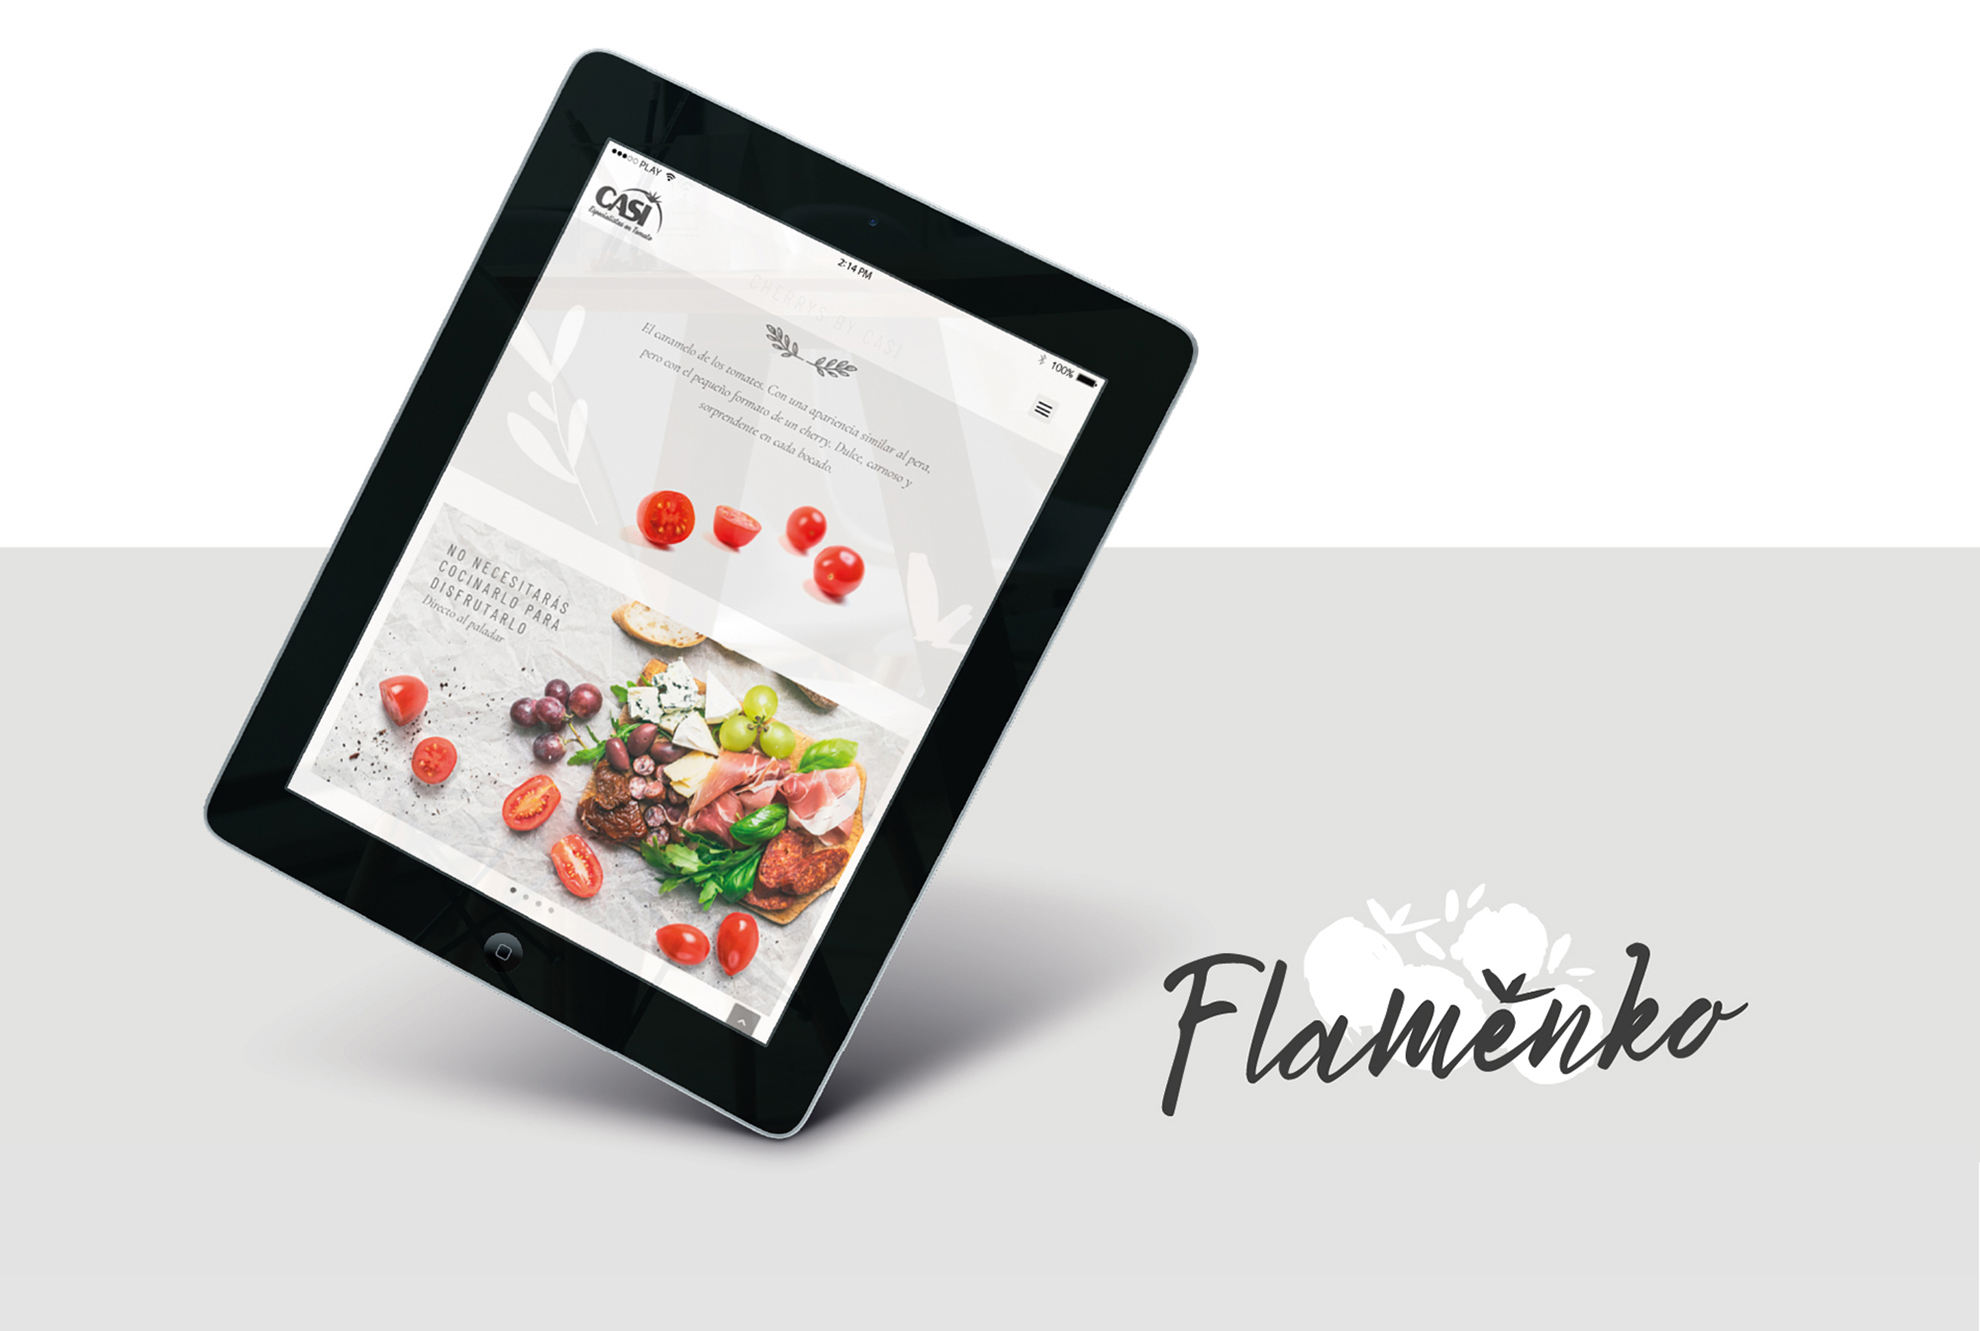 Flamenko by Casi 5 - Fama Publicidad